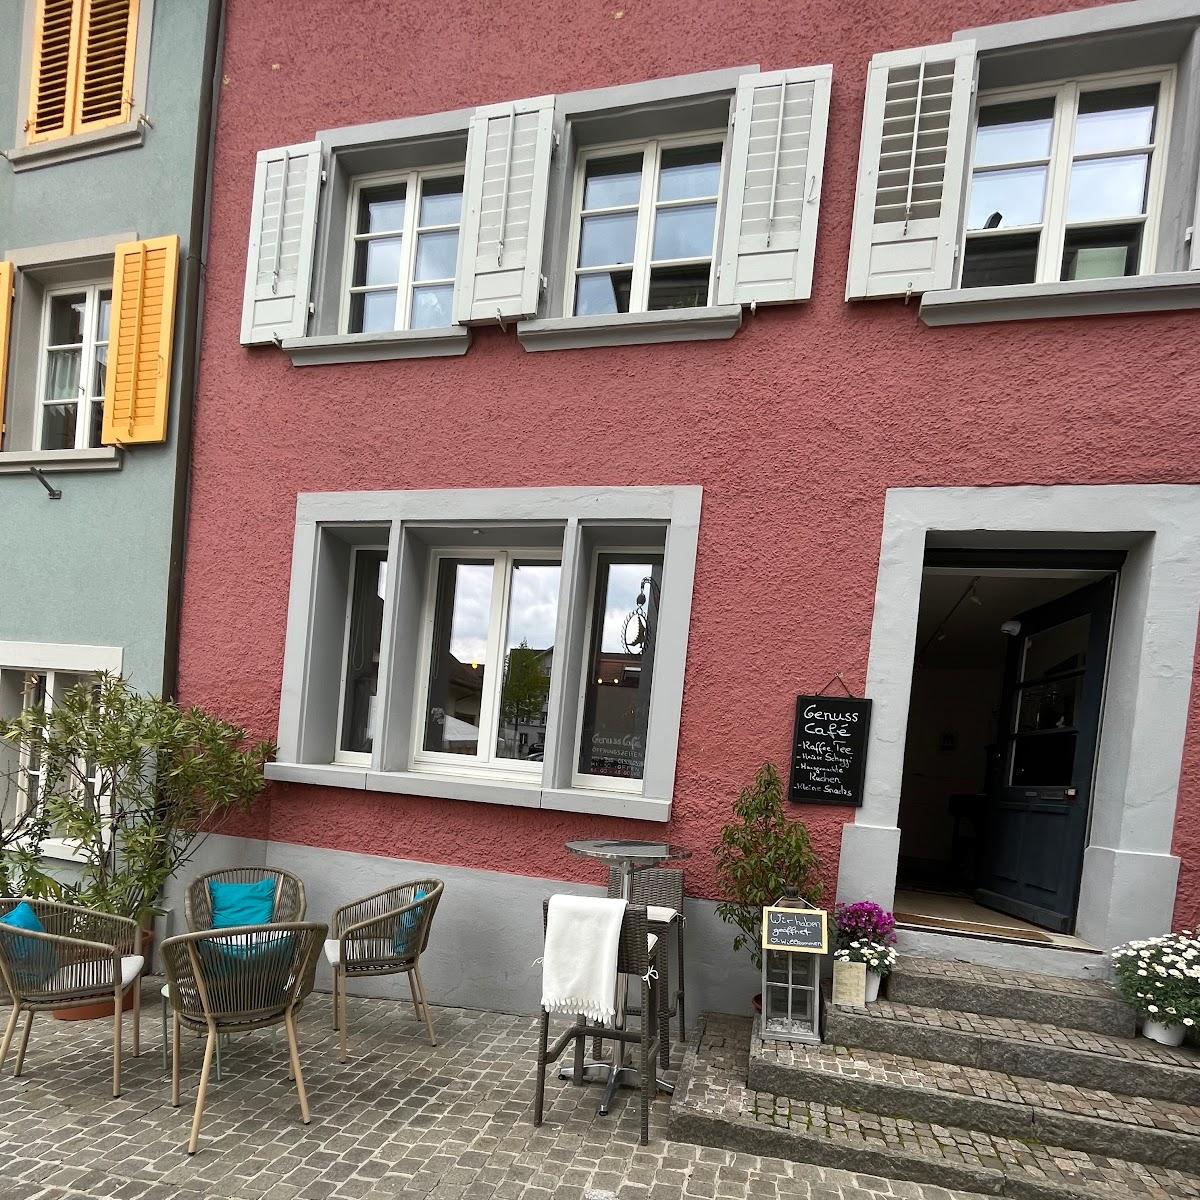 Restaurant "Genuss-Café" in Laufenburg